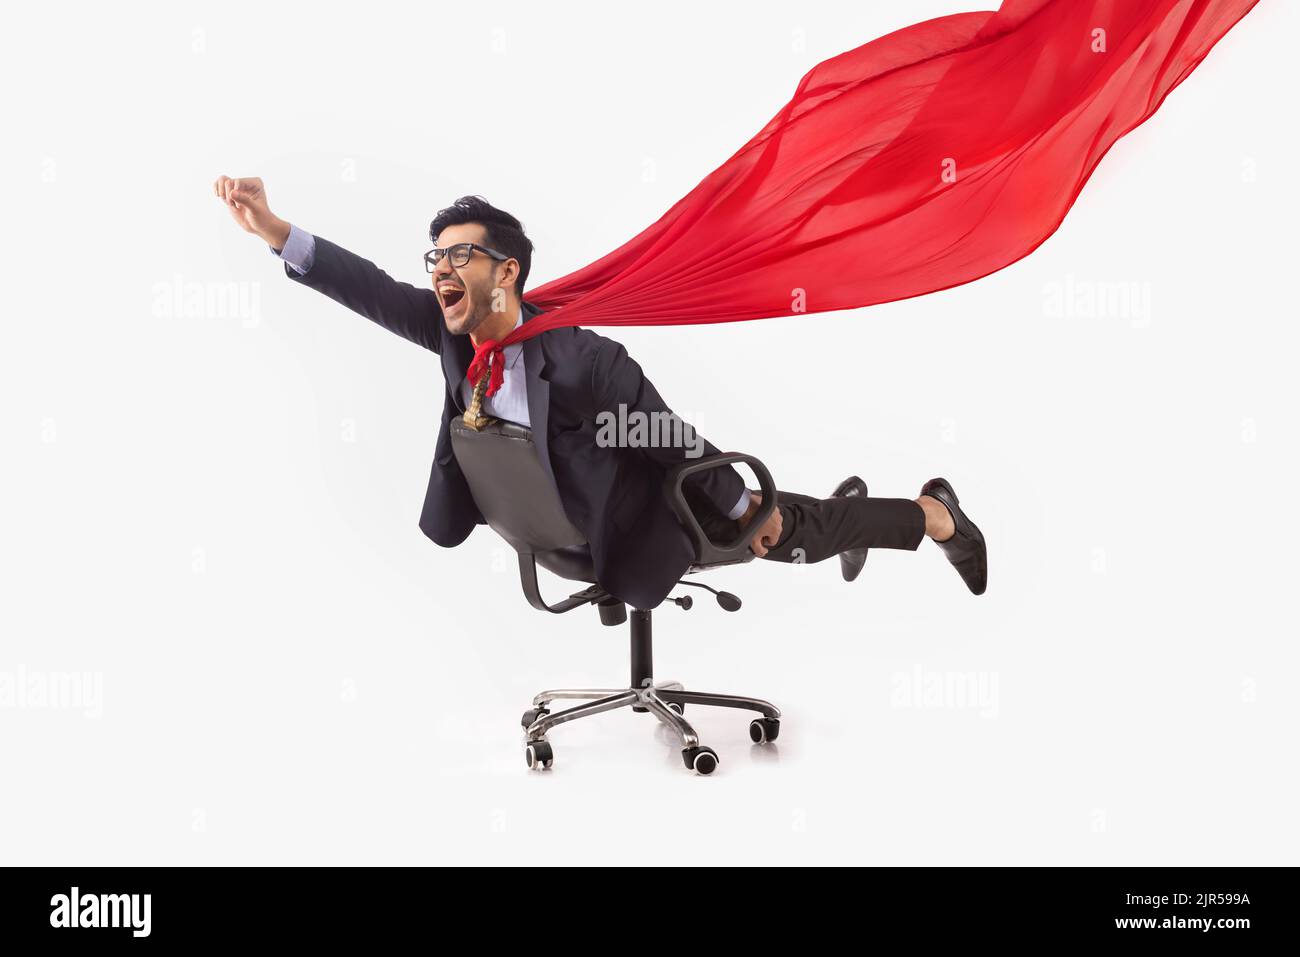 Employé d'entreprise en costume d'affaires formel volant comme un superman allongé sur la chaise. Banque D'Images